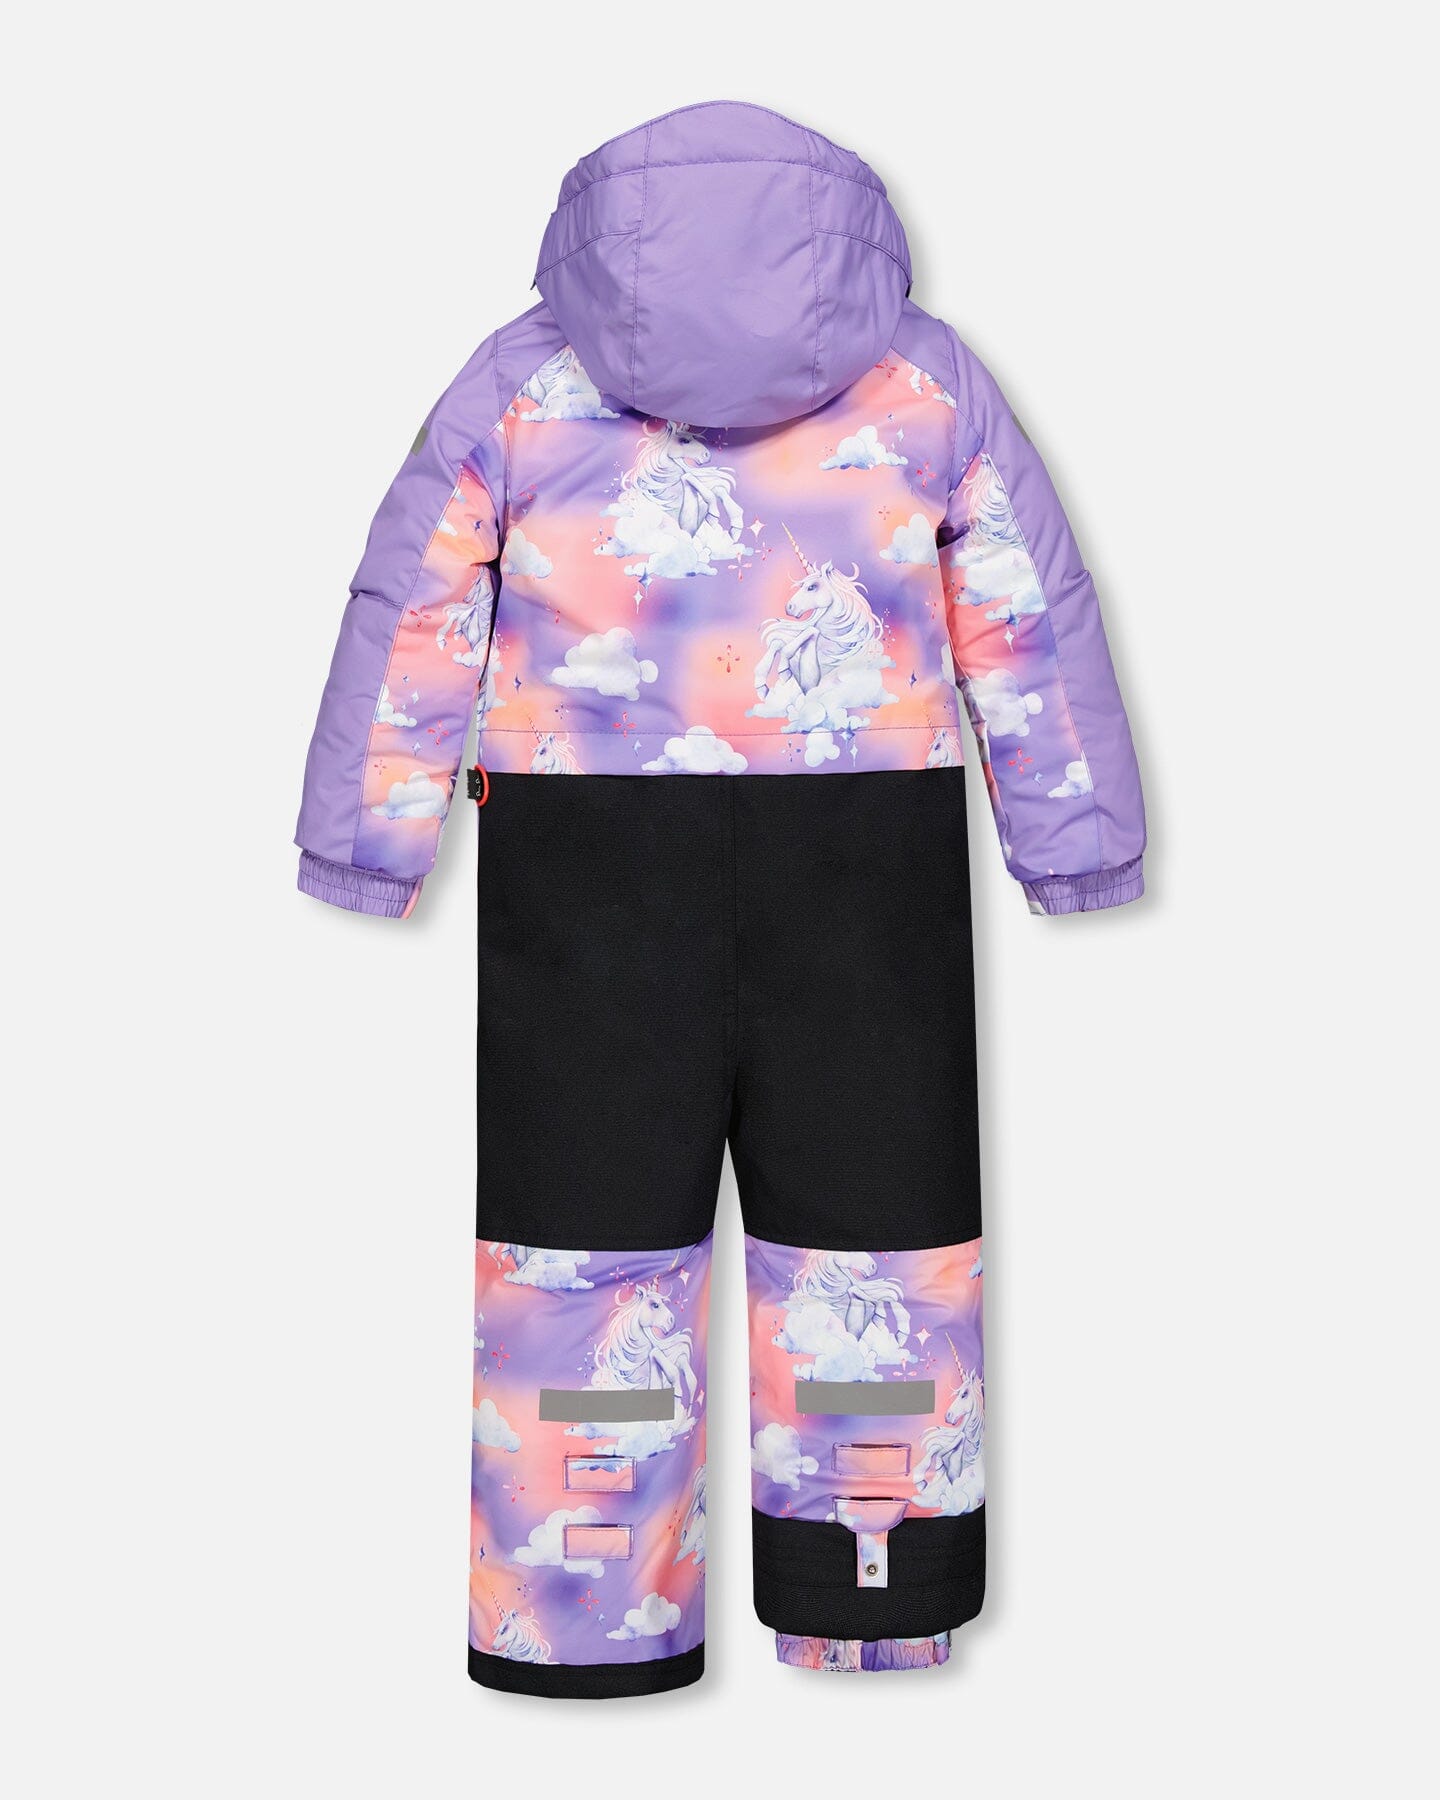 One Piece Lavender Snowsuit With Unicorns In The Cloud Print Snowsuits Deux par Deux 